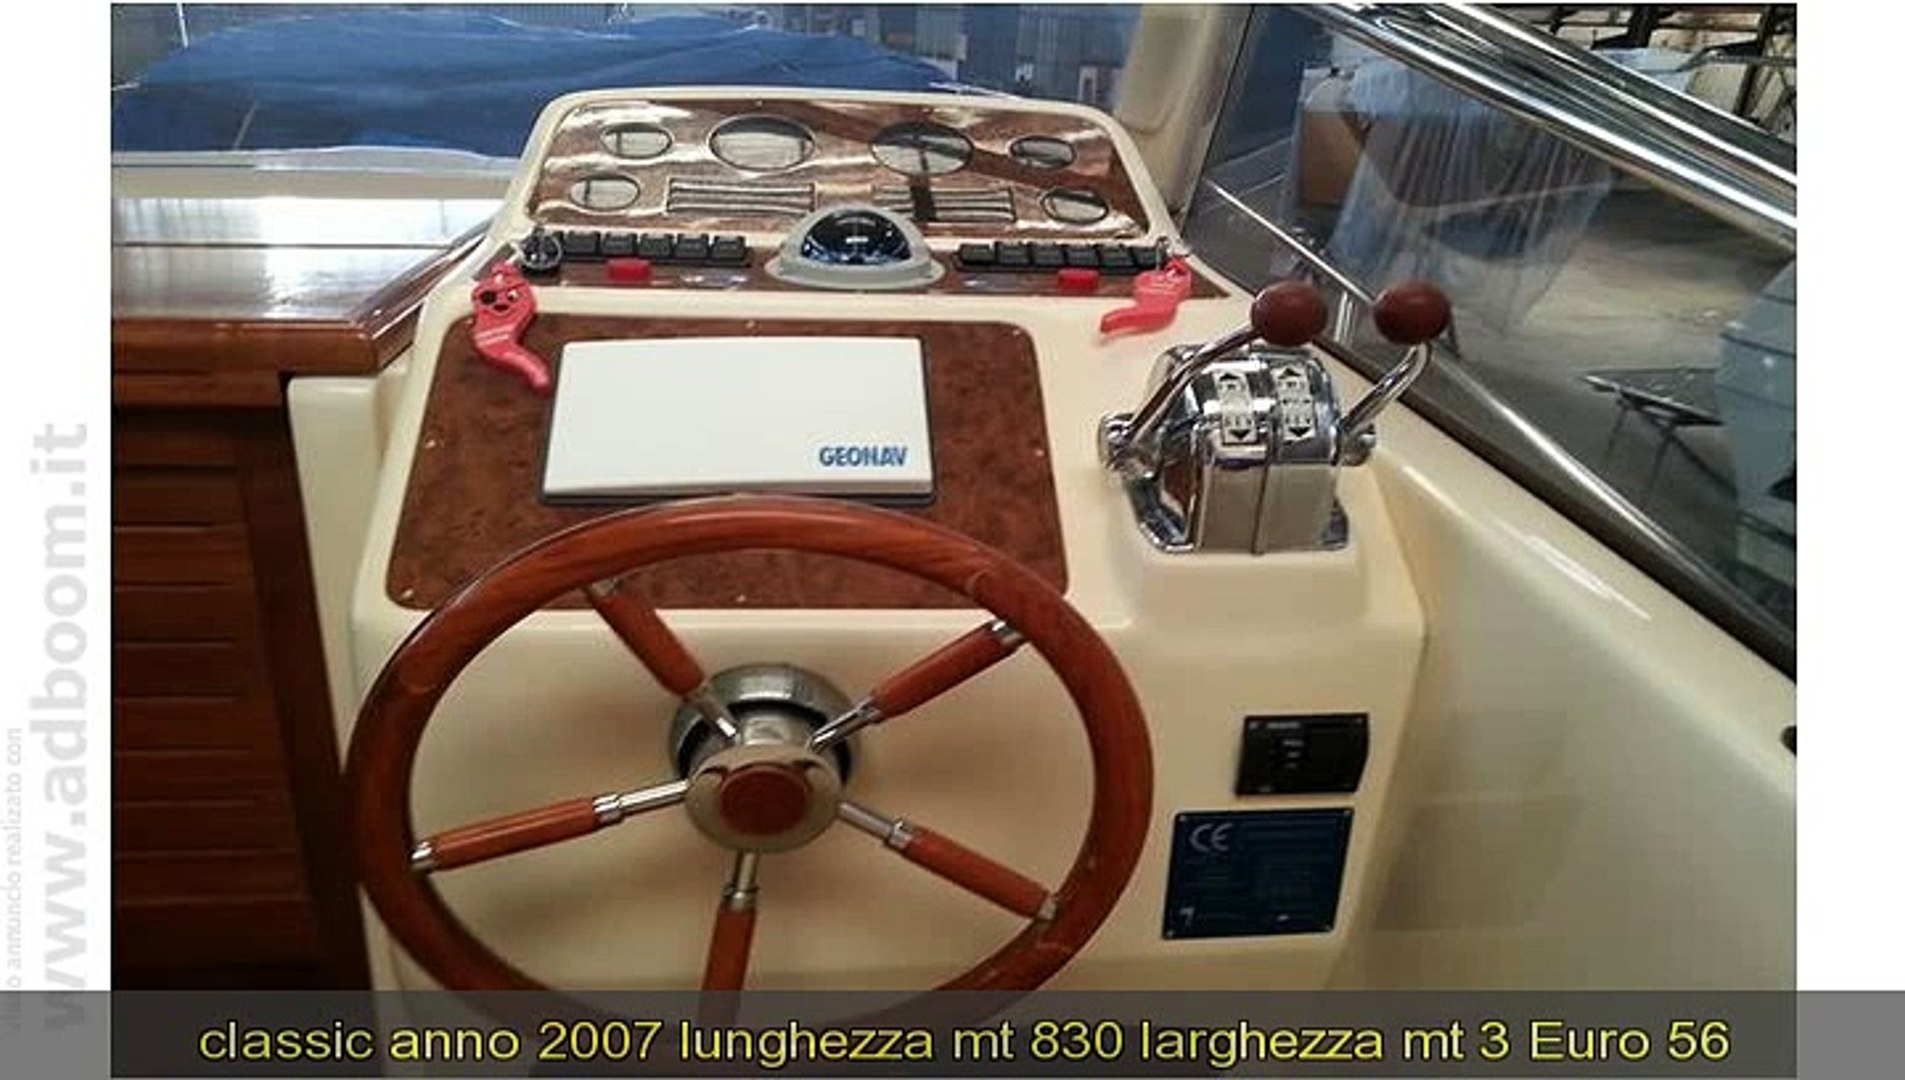 NAPOLI, BACOLI BARCA A MOTORE TECNONAUTICA JERANTO 750 CABIN CLASSIC ANNO  2007 LUNGHEZZA MT 830 - Video Dailymotion